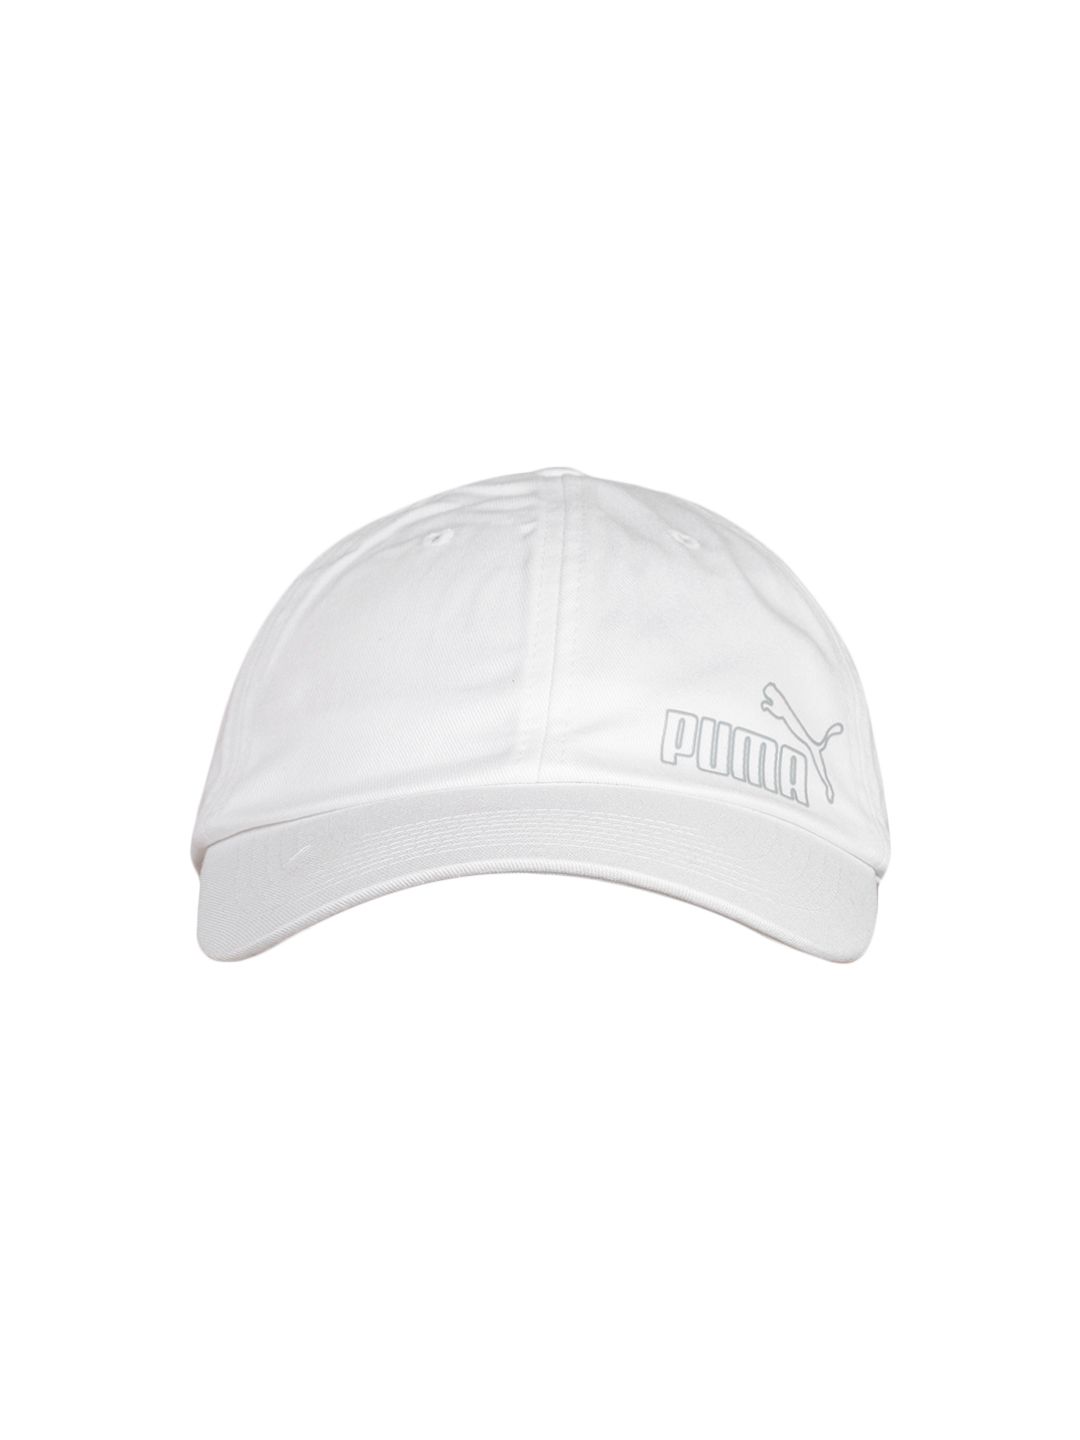 Puma Unisex White Solid Baseball Cap Price in India